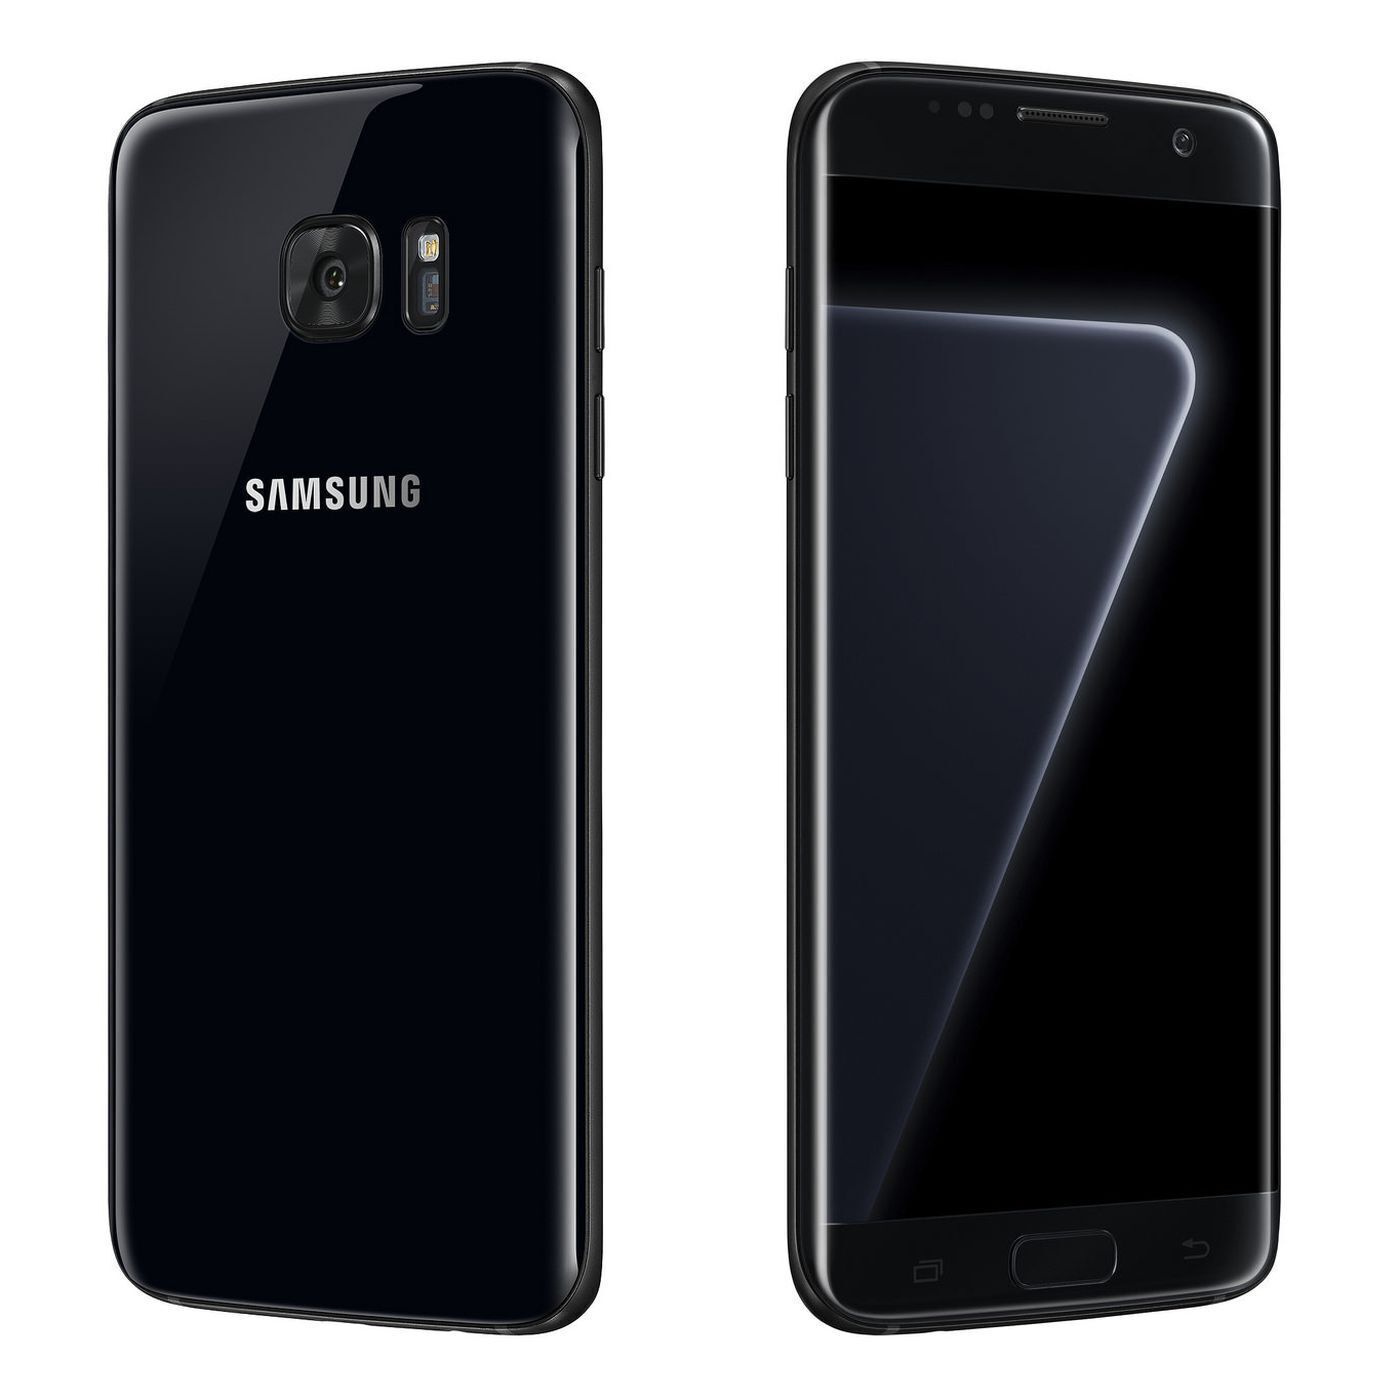 Samsung Galaxy S7 Edge 32GB